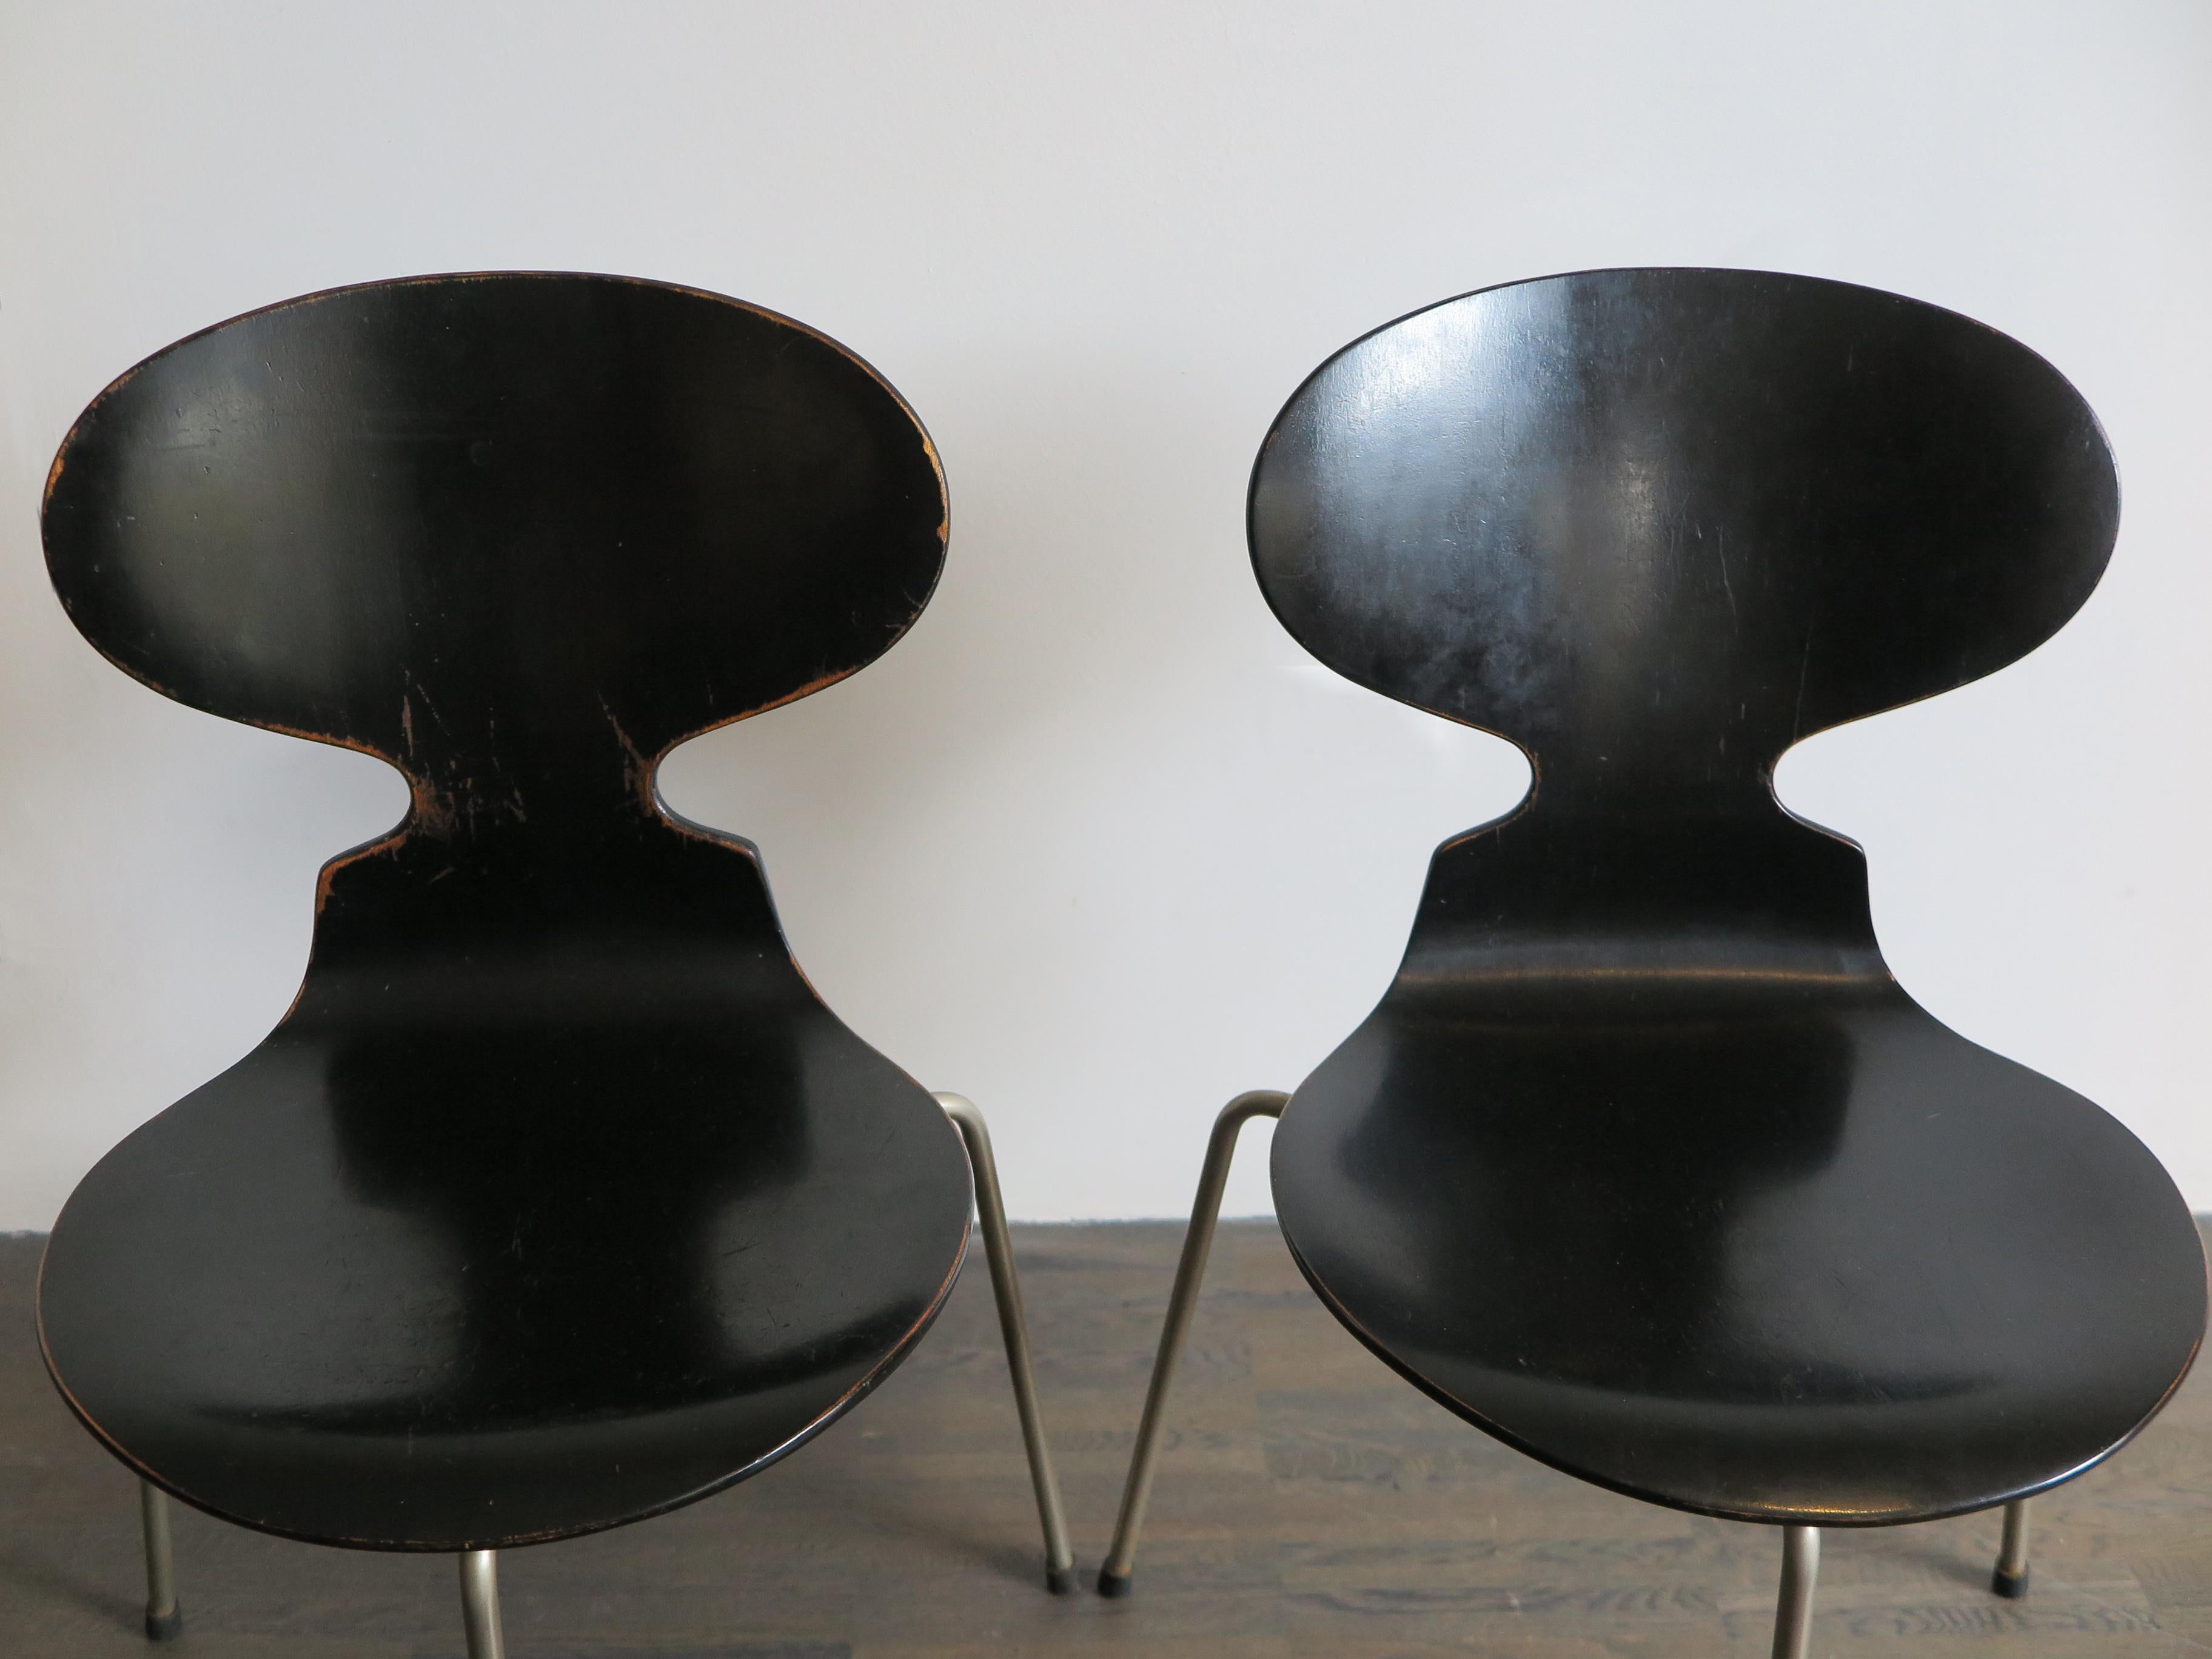 Danish Arne Jacobsen Scandinavian Dining Chairs Model Ant for Fritz Hansen, 1950s